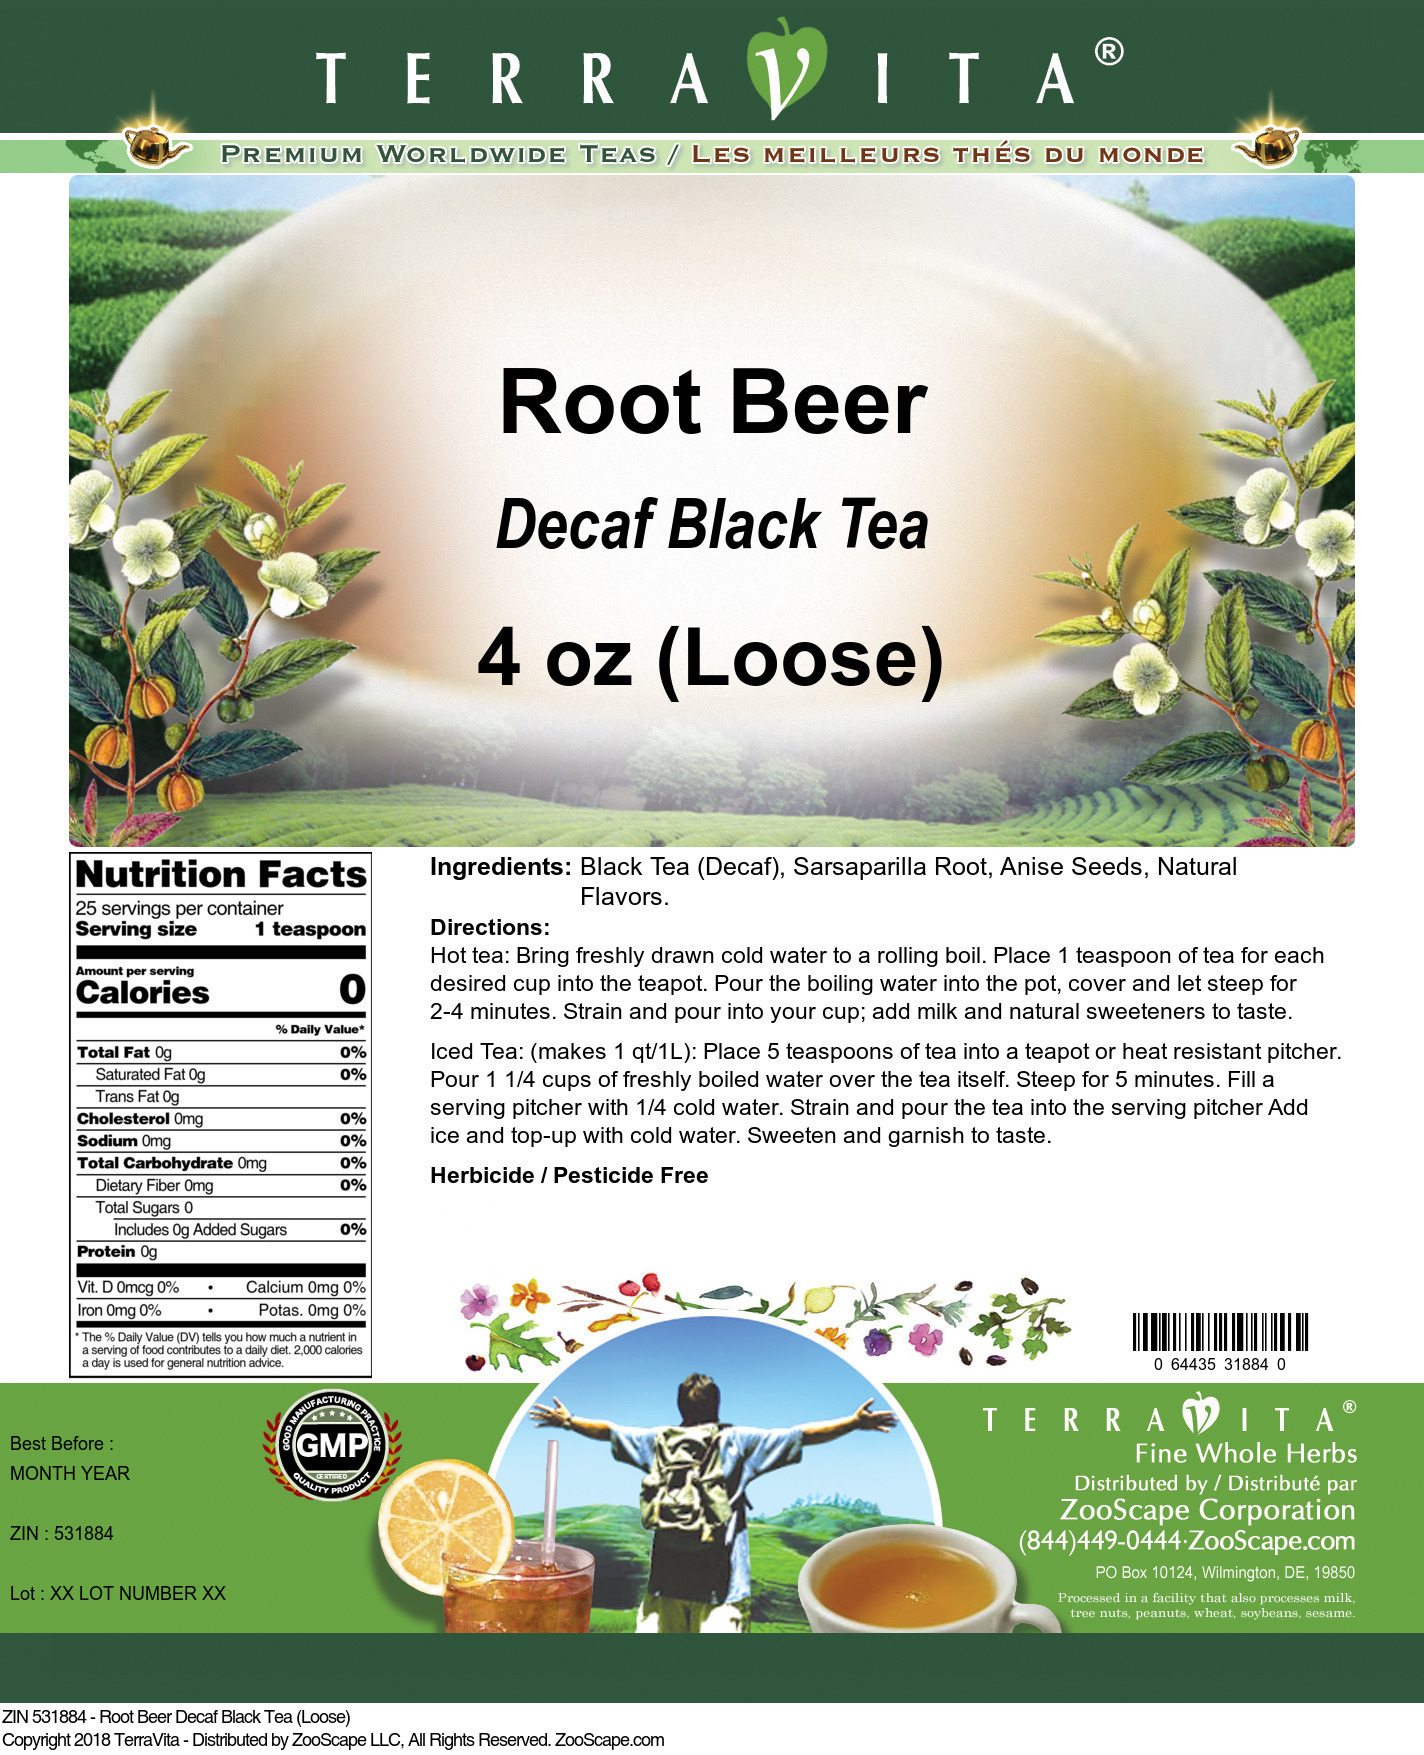 Root Beer Decaf Black Tea (Loose) - Label